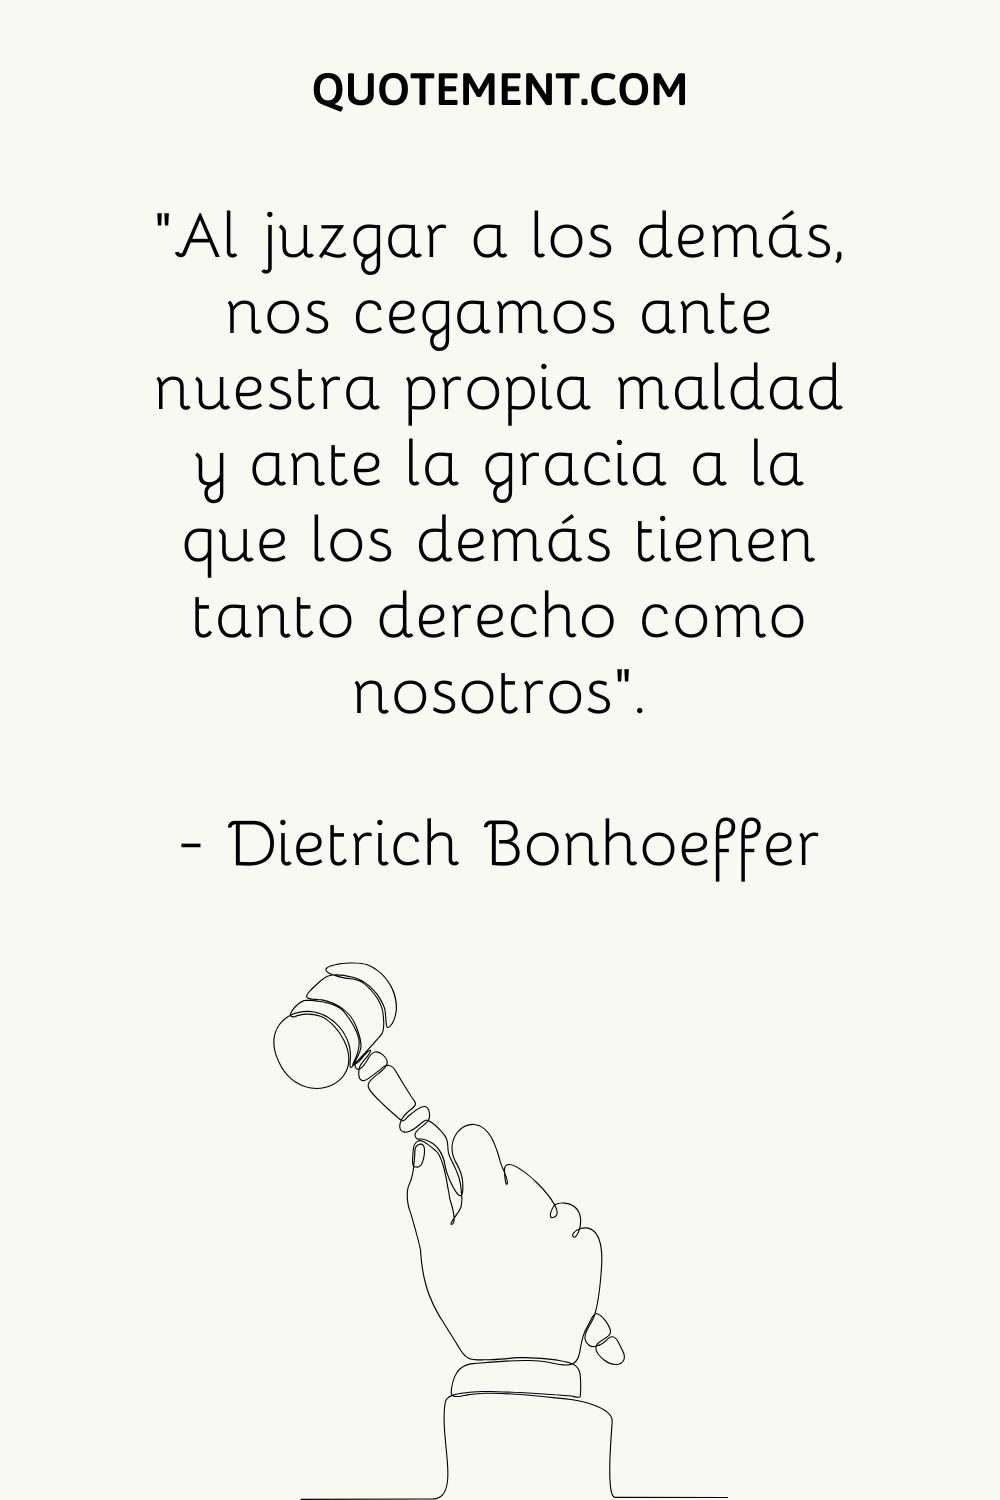 "Al juzgar a los demás, nos cegamos ante nuestra propia maldad y ante la gracia a la que los demás tienen tanto derecho como nosotros". - Dietrich Bonhoeffer